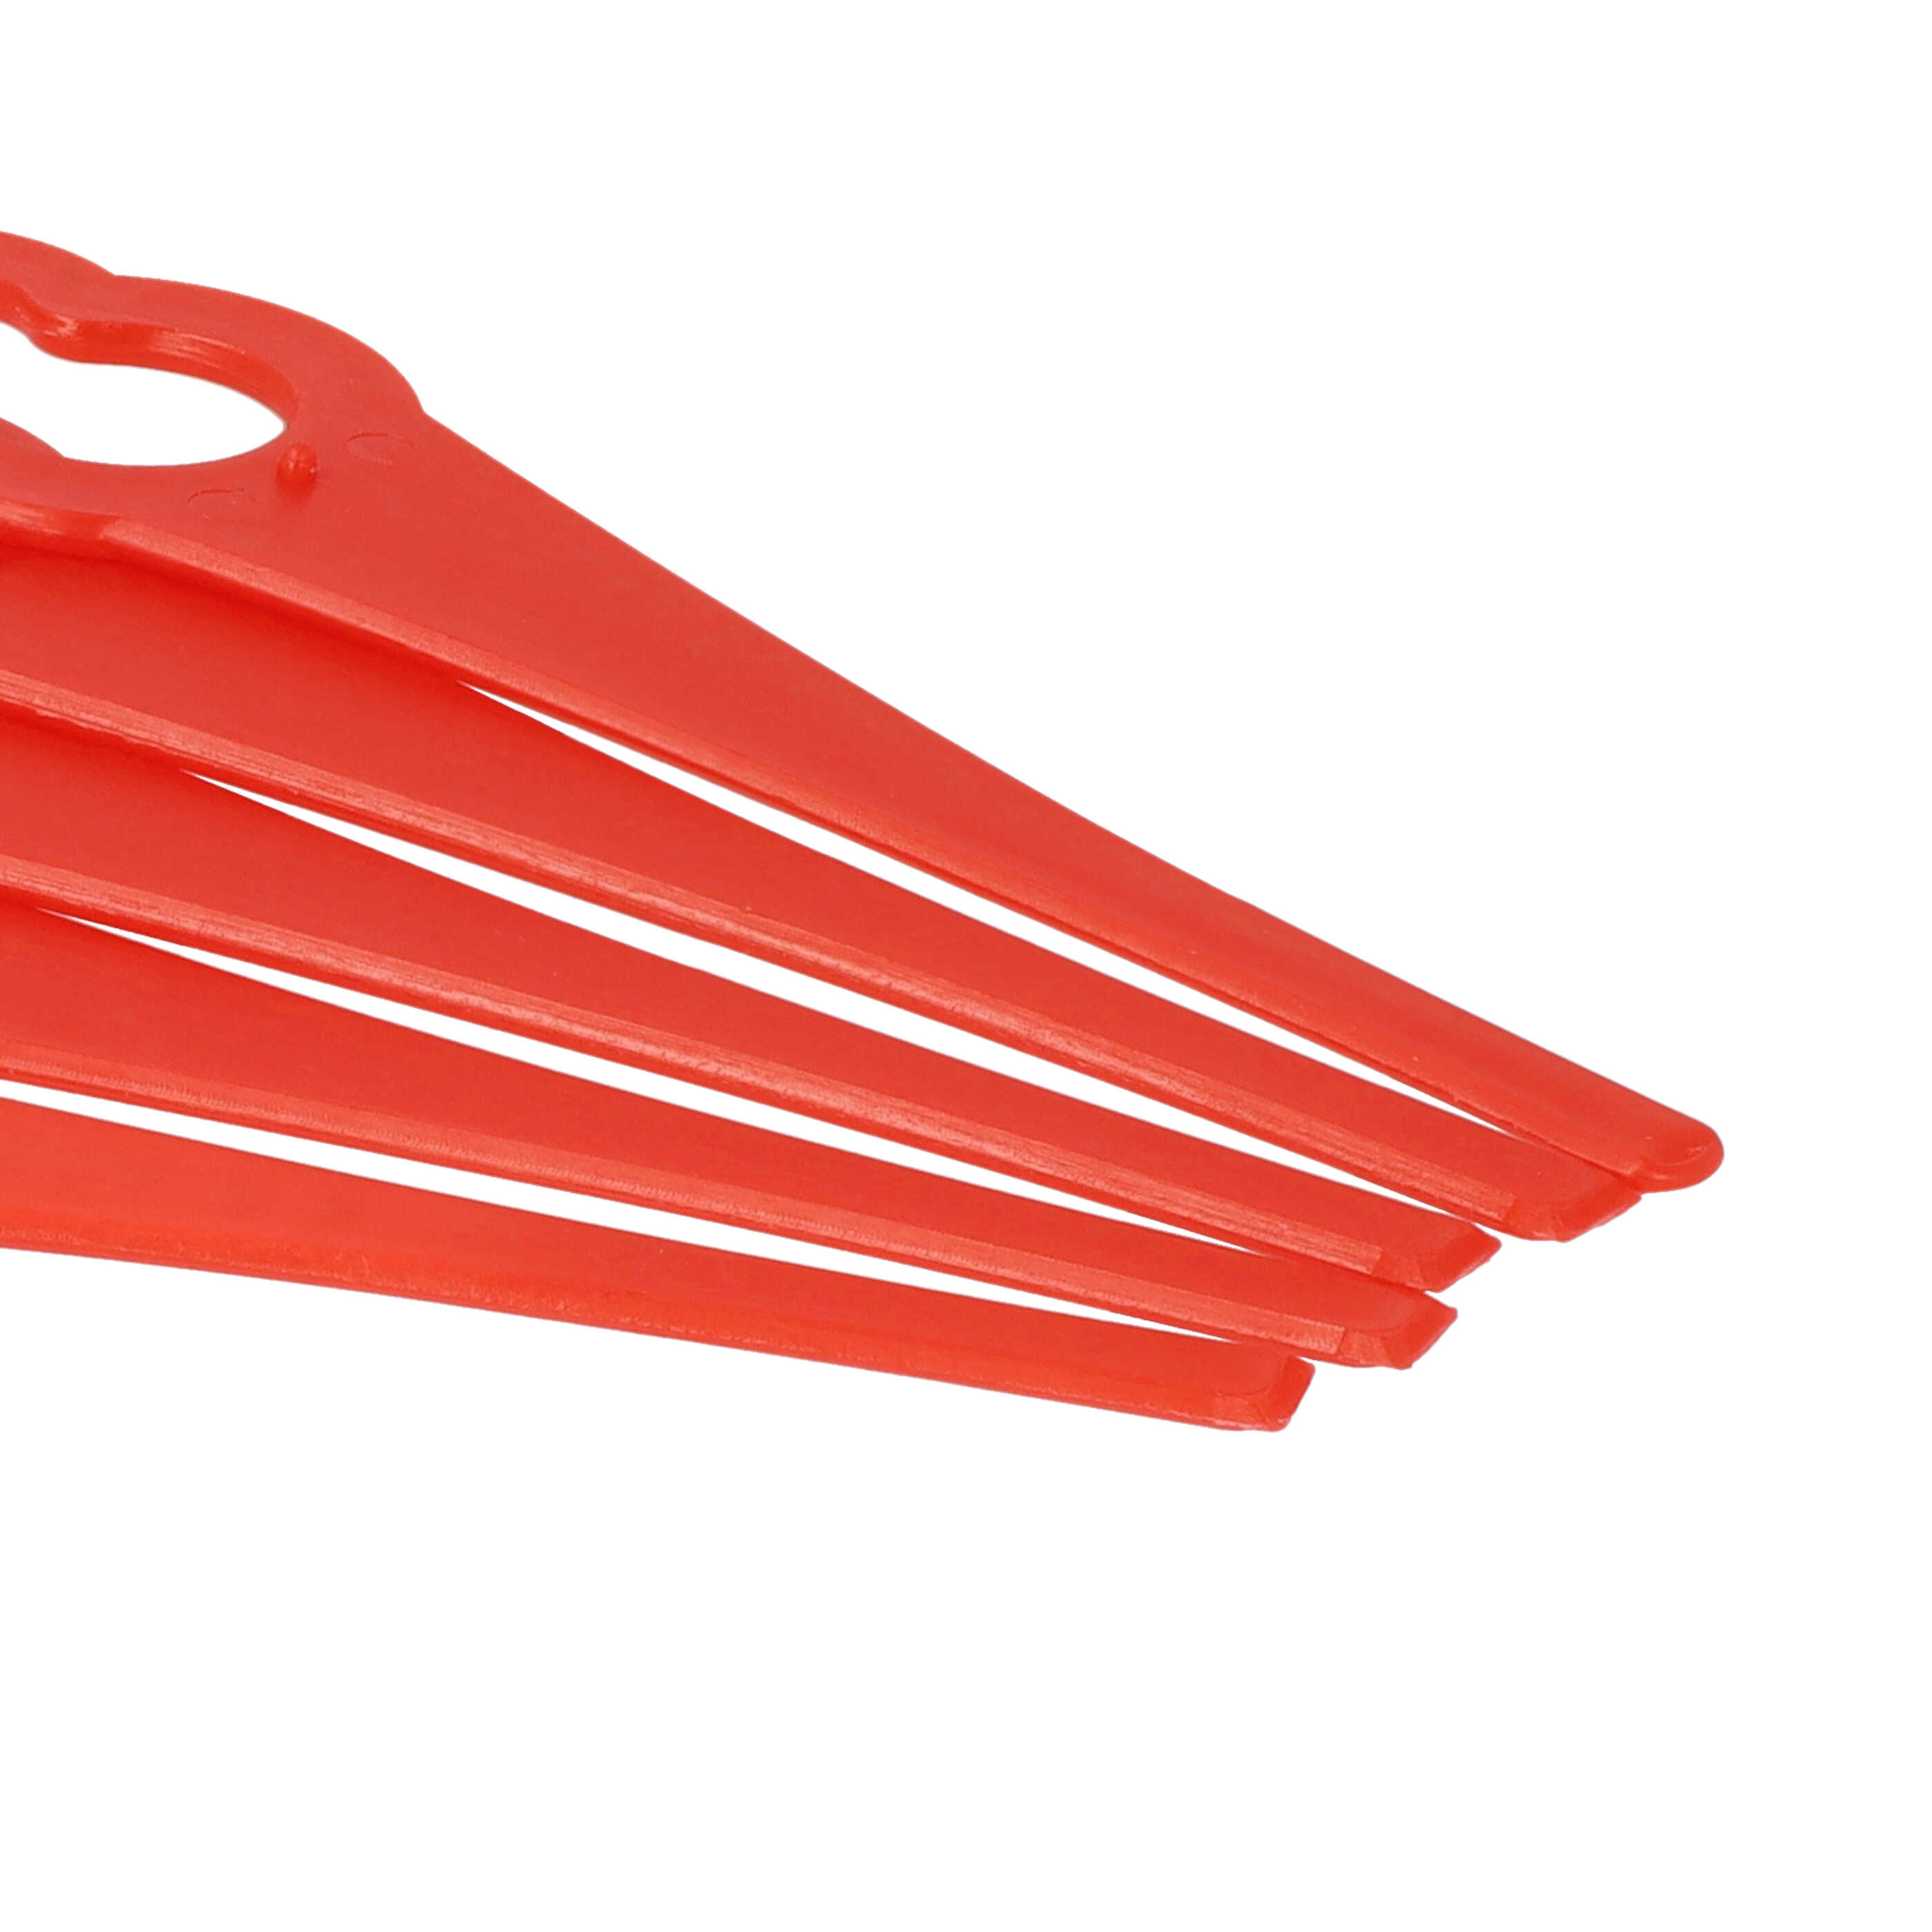 5x Lama sostituisce ALM BQ026 per tagliaerba - rosso, nylon / plastica